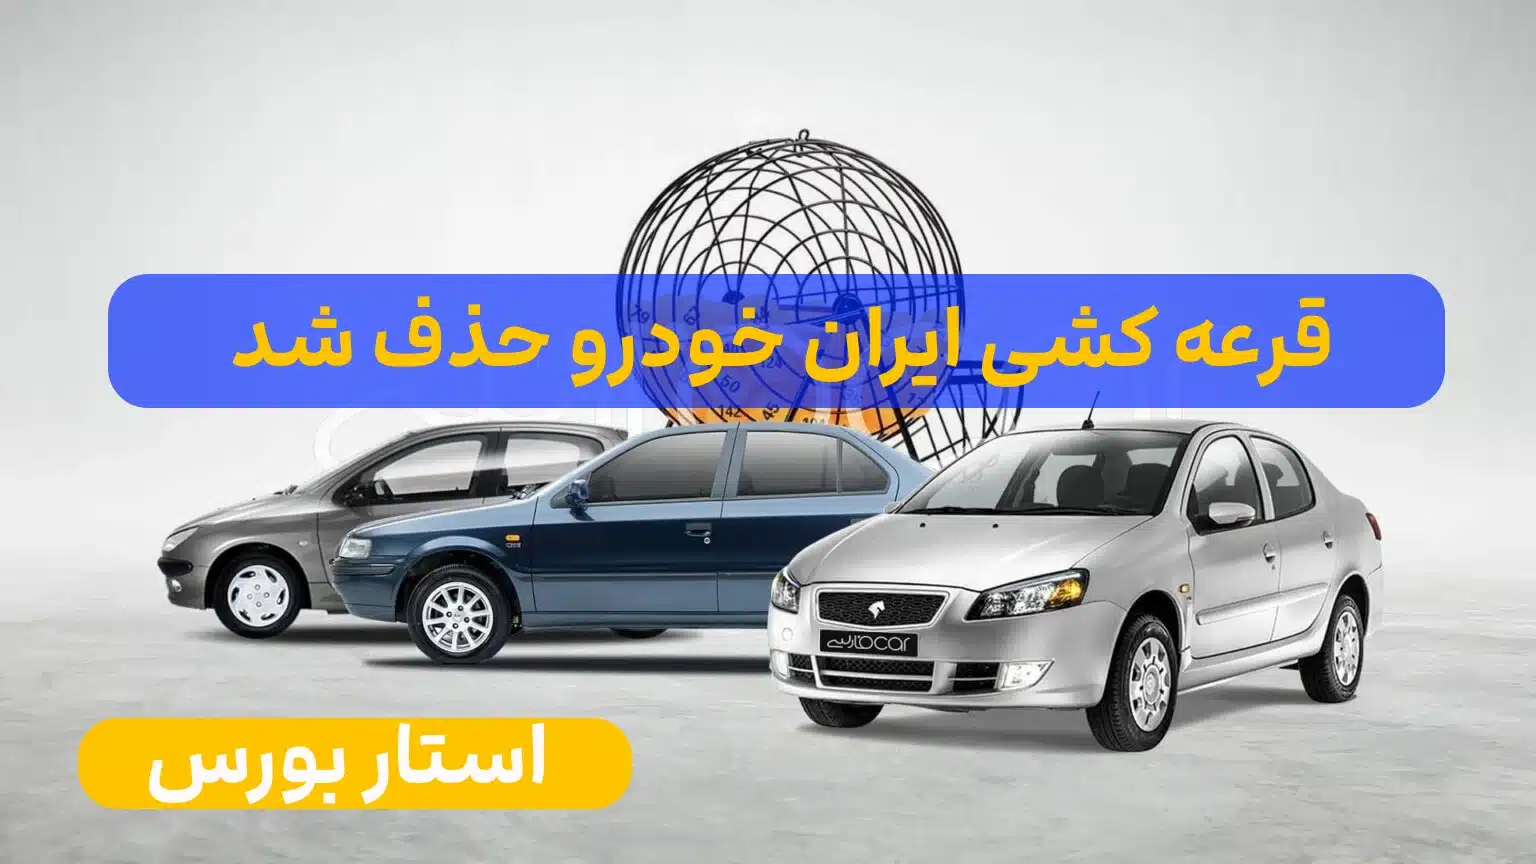 قرعه کشی ایران خودرو حذف شدآیا قرعه کشی ایران خودرو حذف شده است